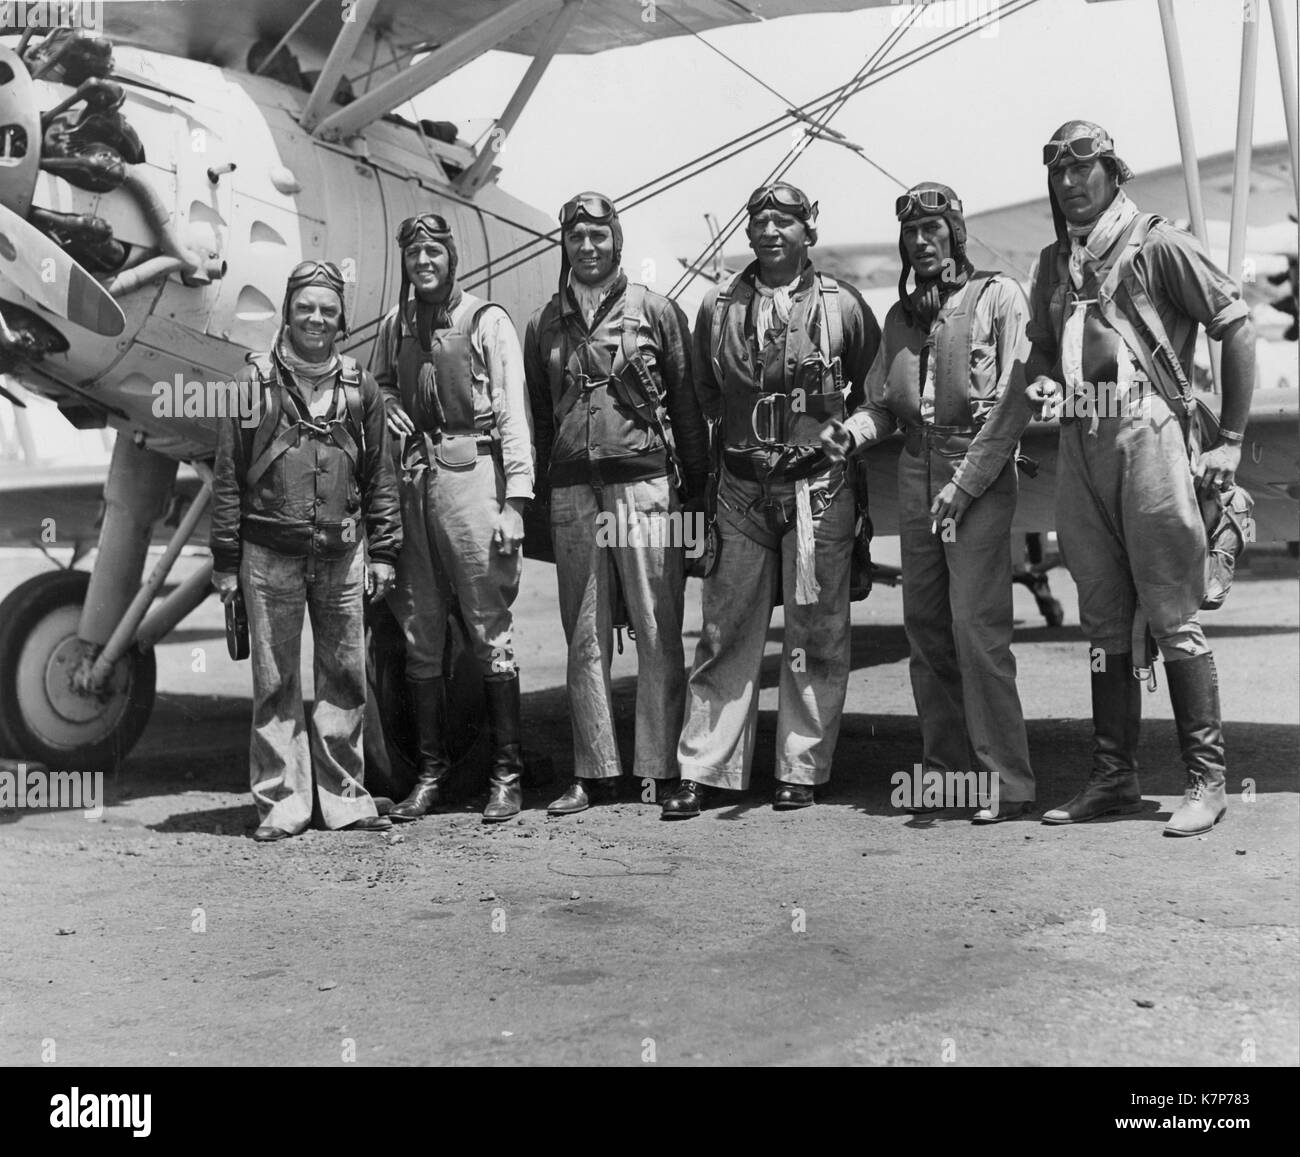 Acteurs Cliff Edwards (extrême gauche), Clark Gable, et Wallace Beery (quatrième et cinquième à partir de la gauche), posent avec des aviateurs navals le Lieutenant John Thatch USN (deuxième à gauche), le lieutenant Duckworth, NSU et le lieutenant Southworth, USN (deuxième à droite et l'extrême droite) pendant le tournage de l'enfer, les plongeurs. NAS - Île du Nord, en Californie, 16 Septembre, 1931. Banque D'Images